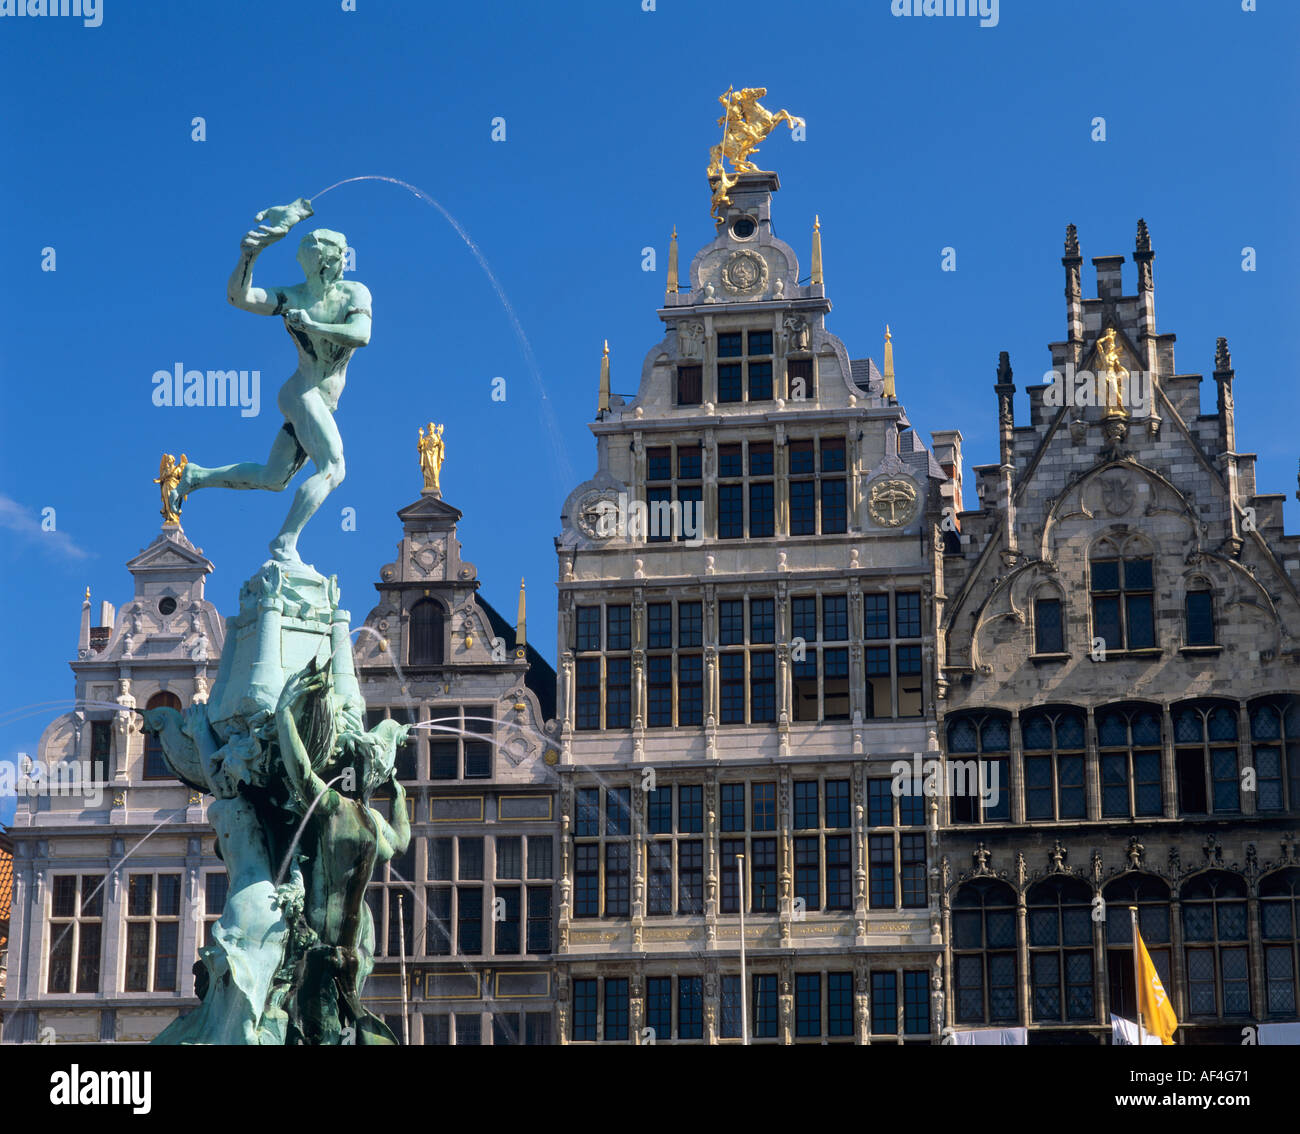 Brabo Fontaine et guildhouses Grand-place Anvers Belgique Banque D'Images